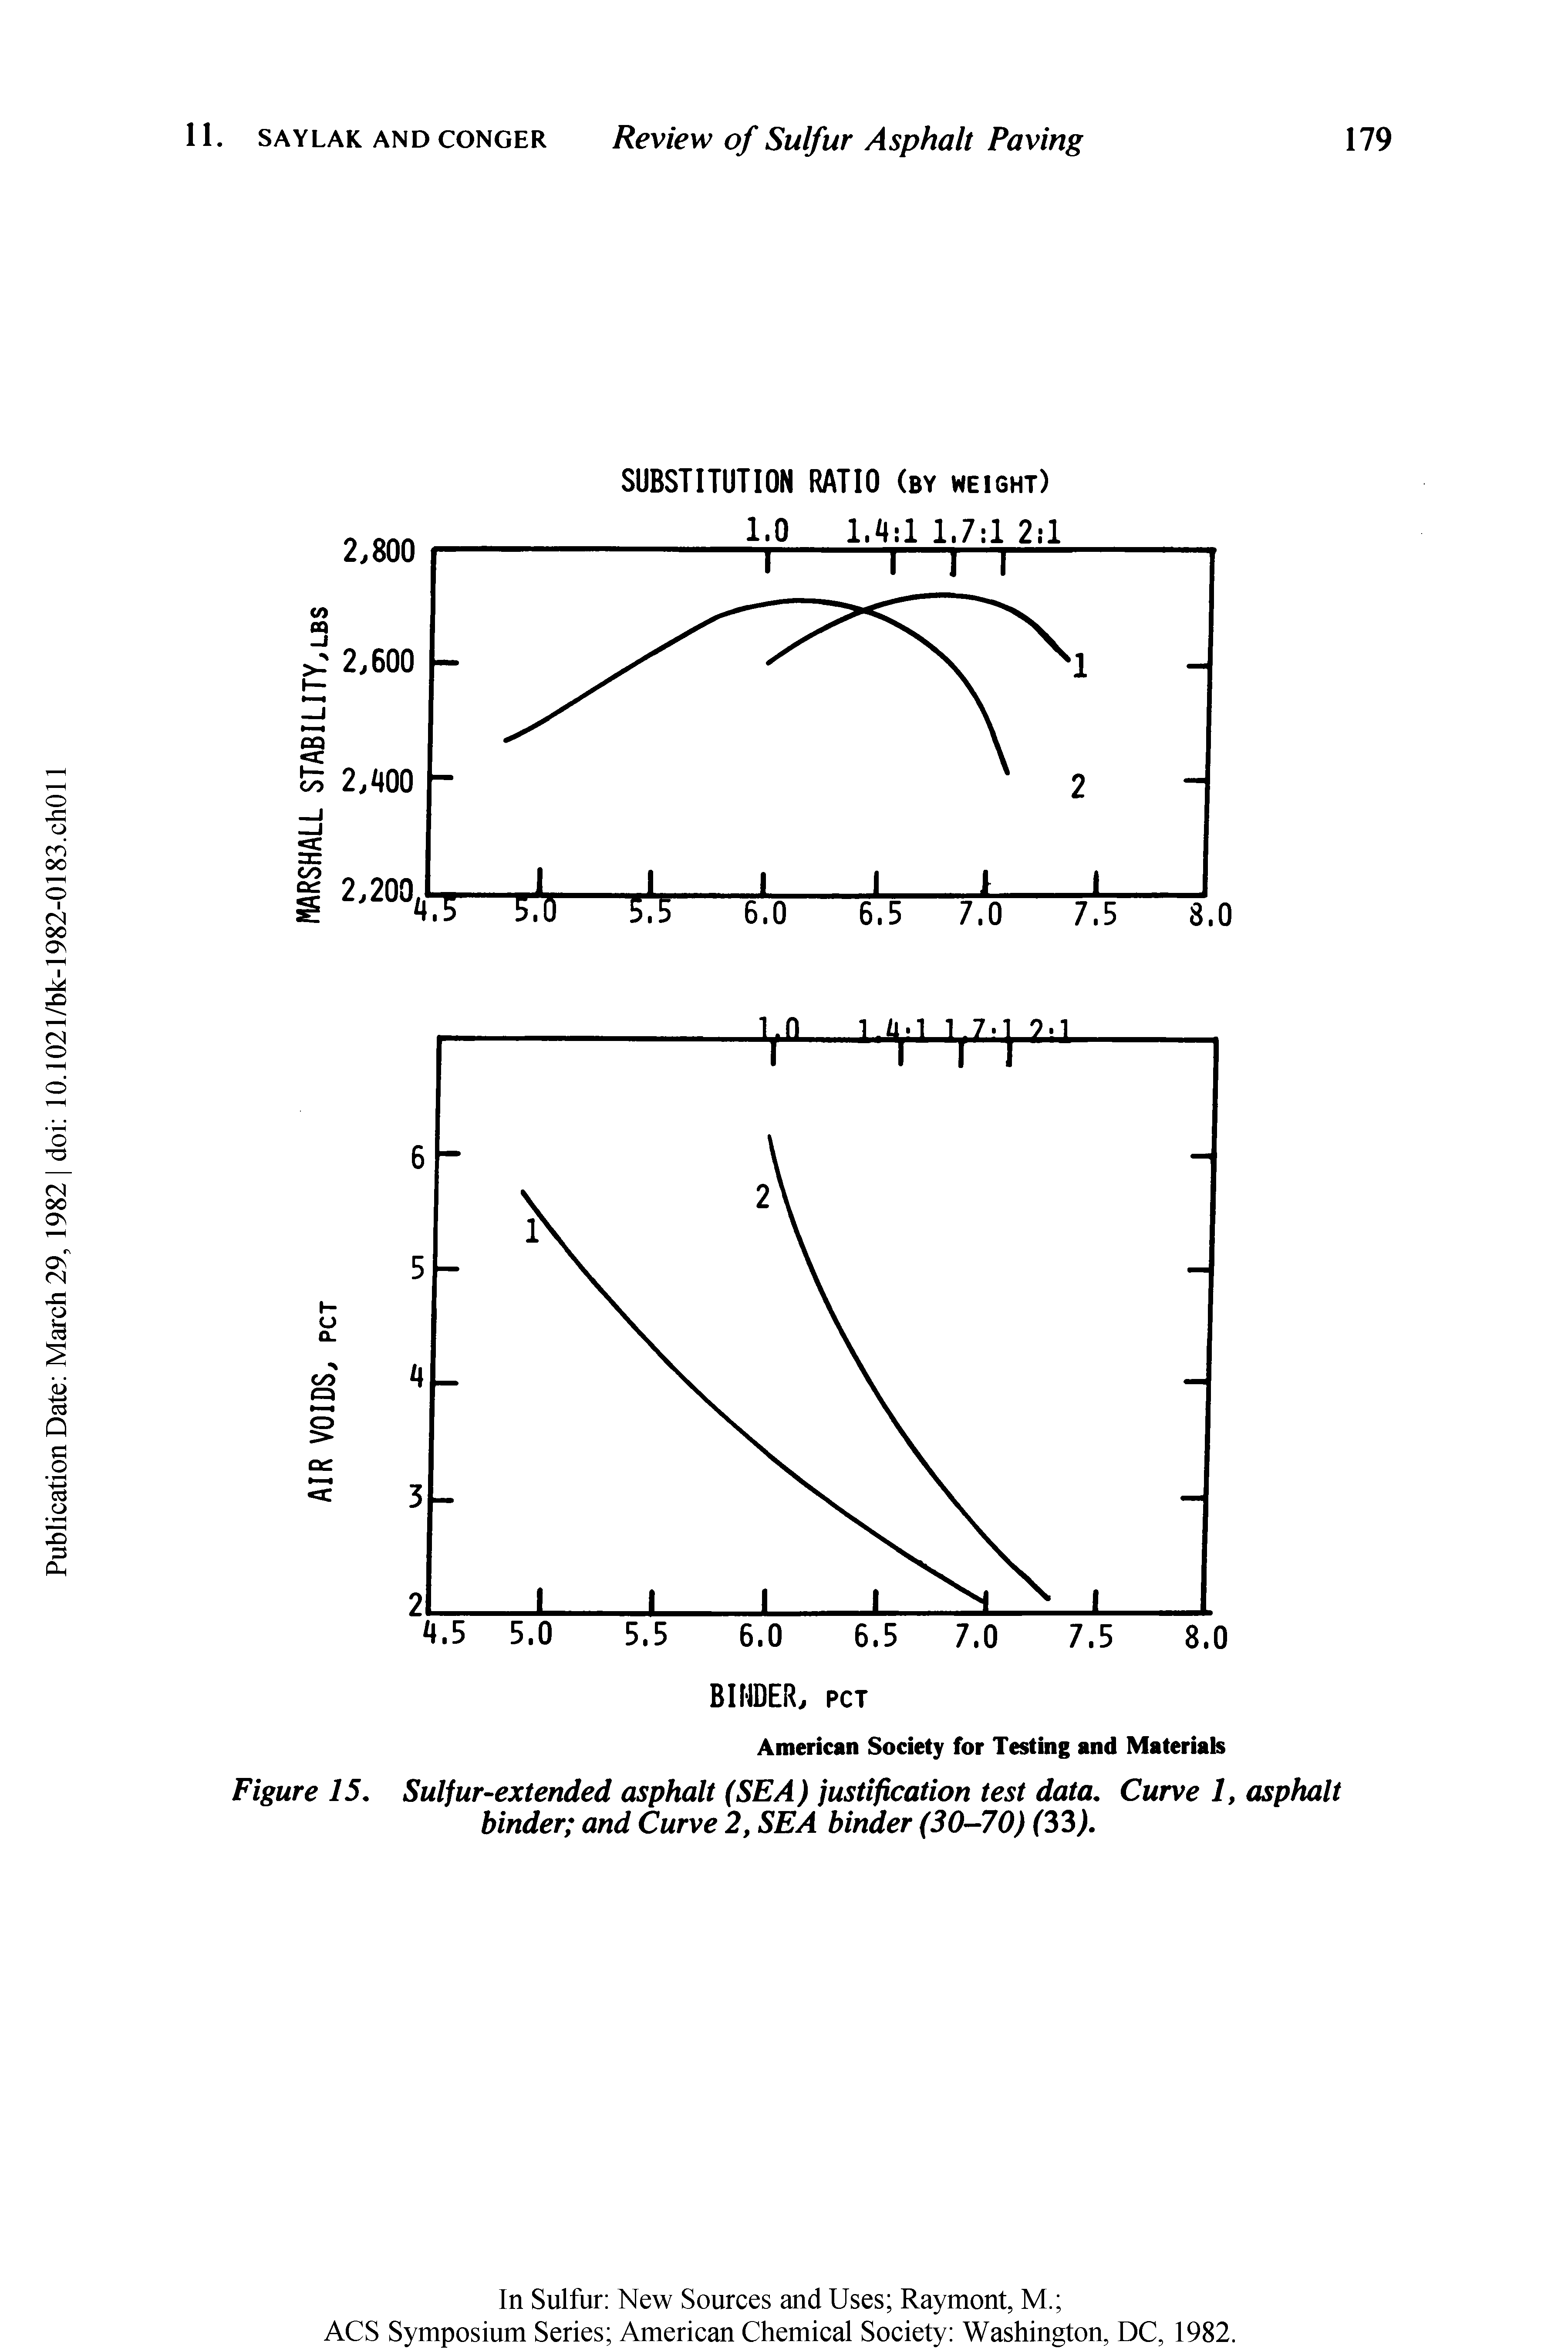 Figure 15, Sulfur-extended asphalt (SEA) justification test data. Curve 1, asphalt binder and Curve 2, SEA binder (30-70) (33).